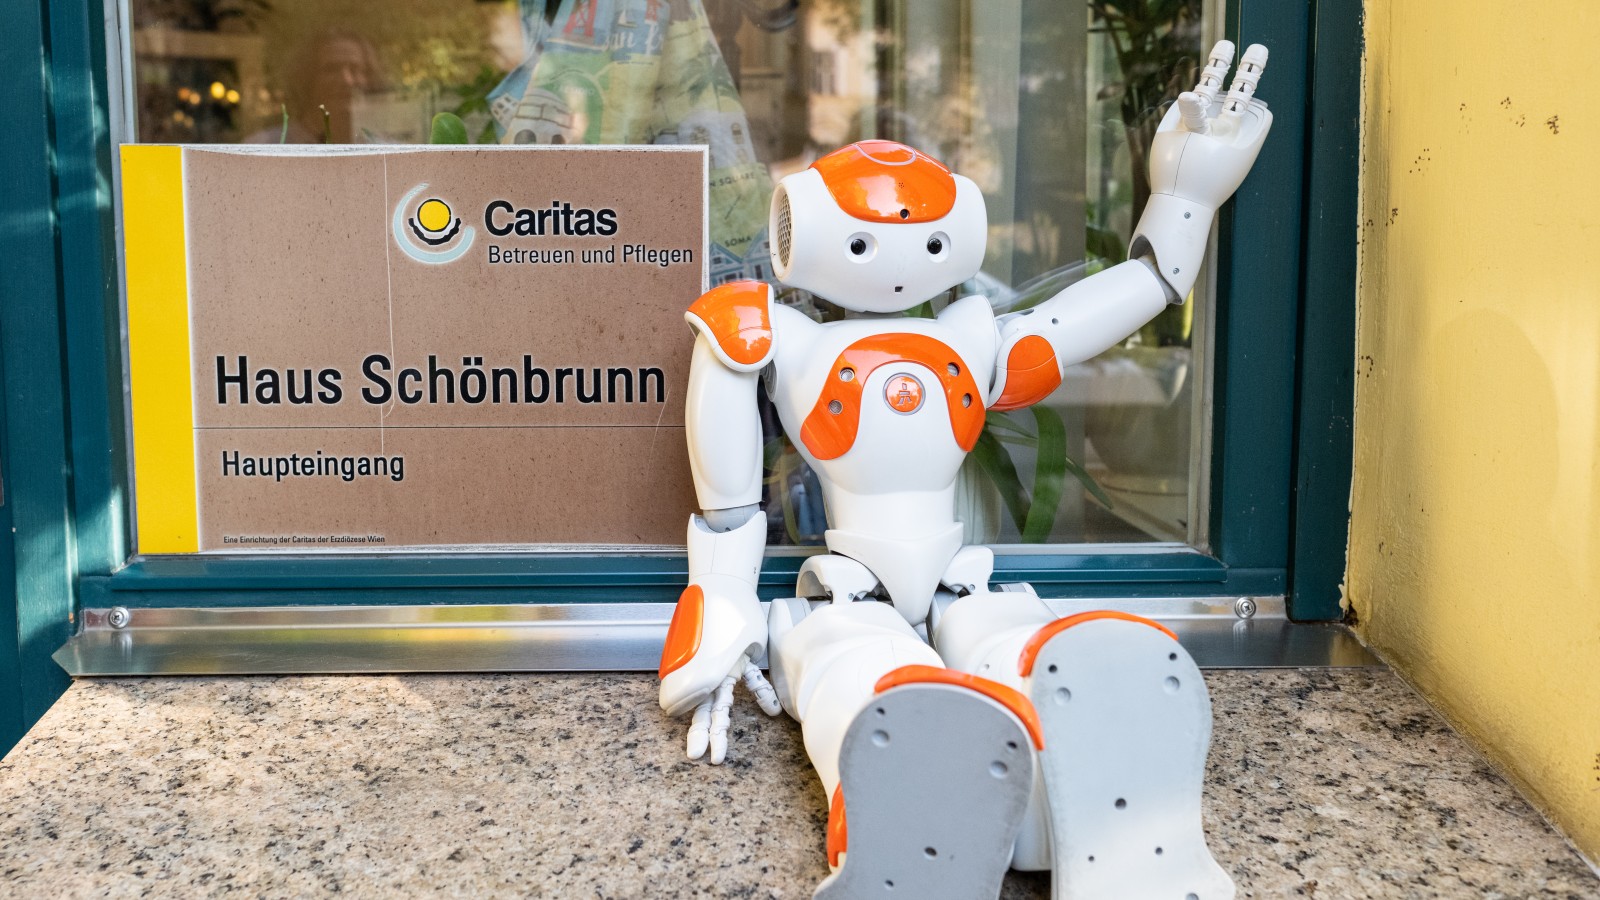 Der Einsatz von Robotern wie NAO wird nun in den Pflegeheimen und in der mobilen Pflege der Caritas untersucht